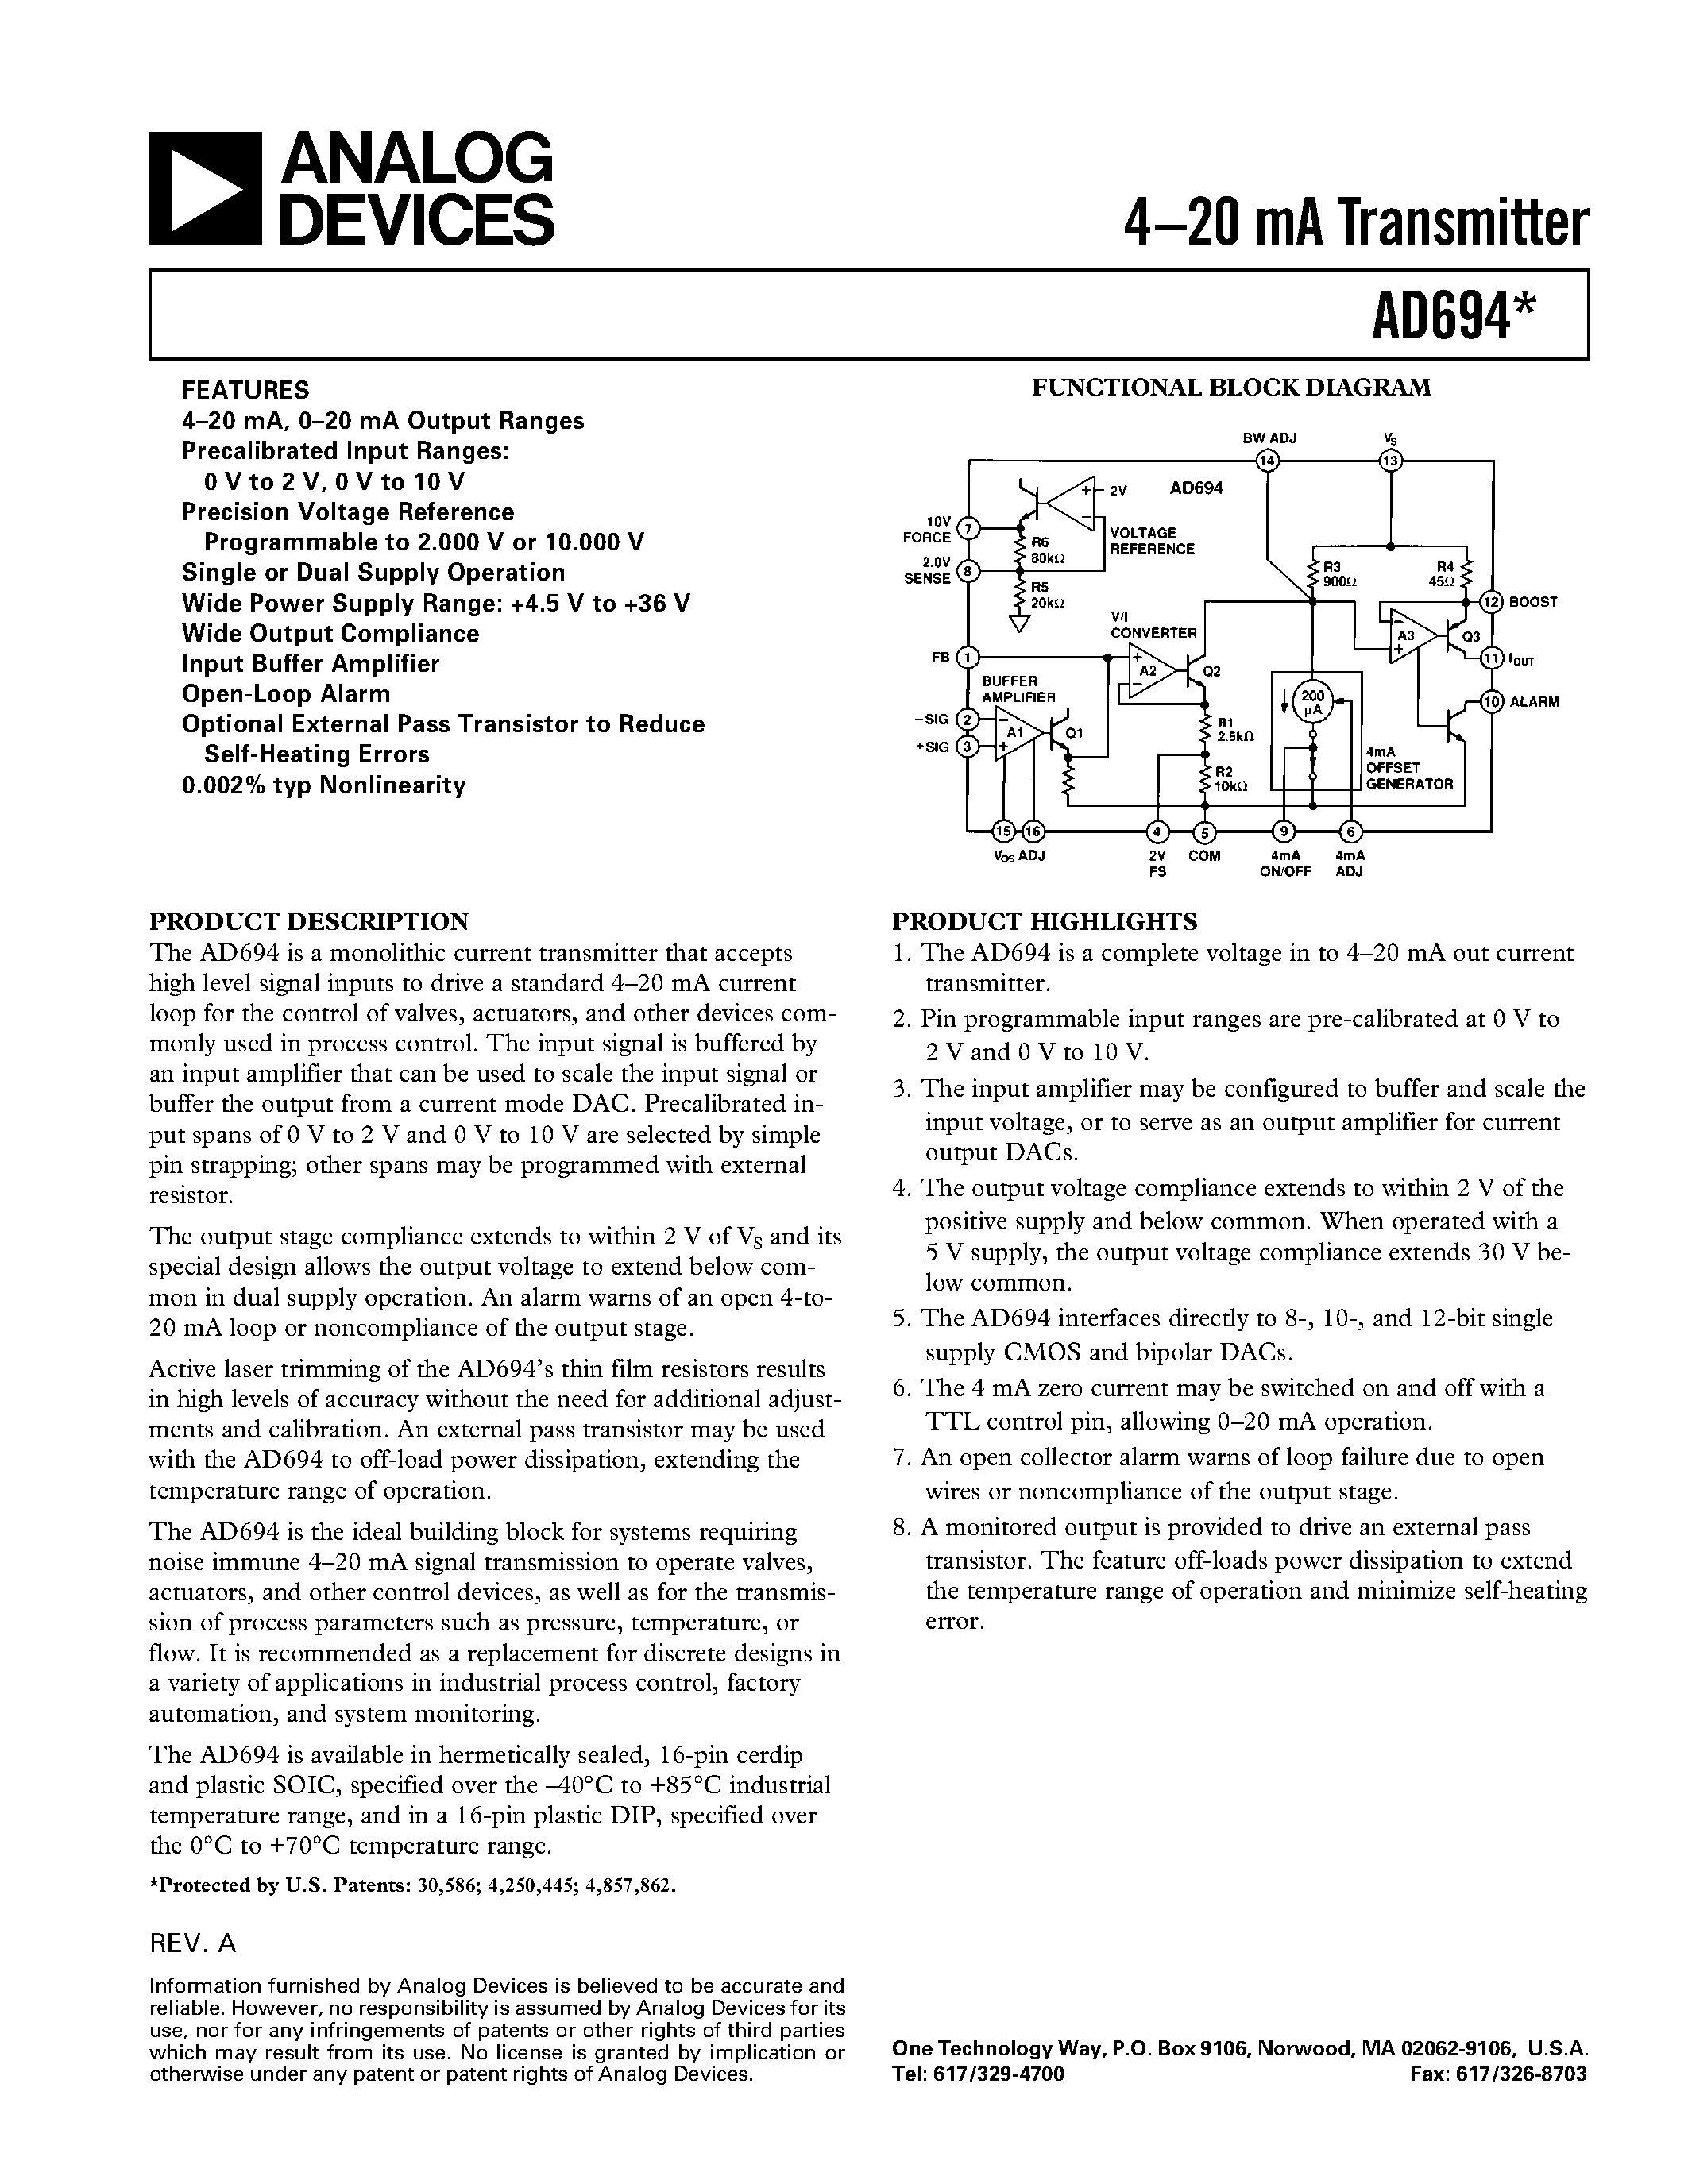 Даташит AD694 - 4.20 mA Transmitter страница 1